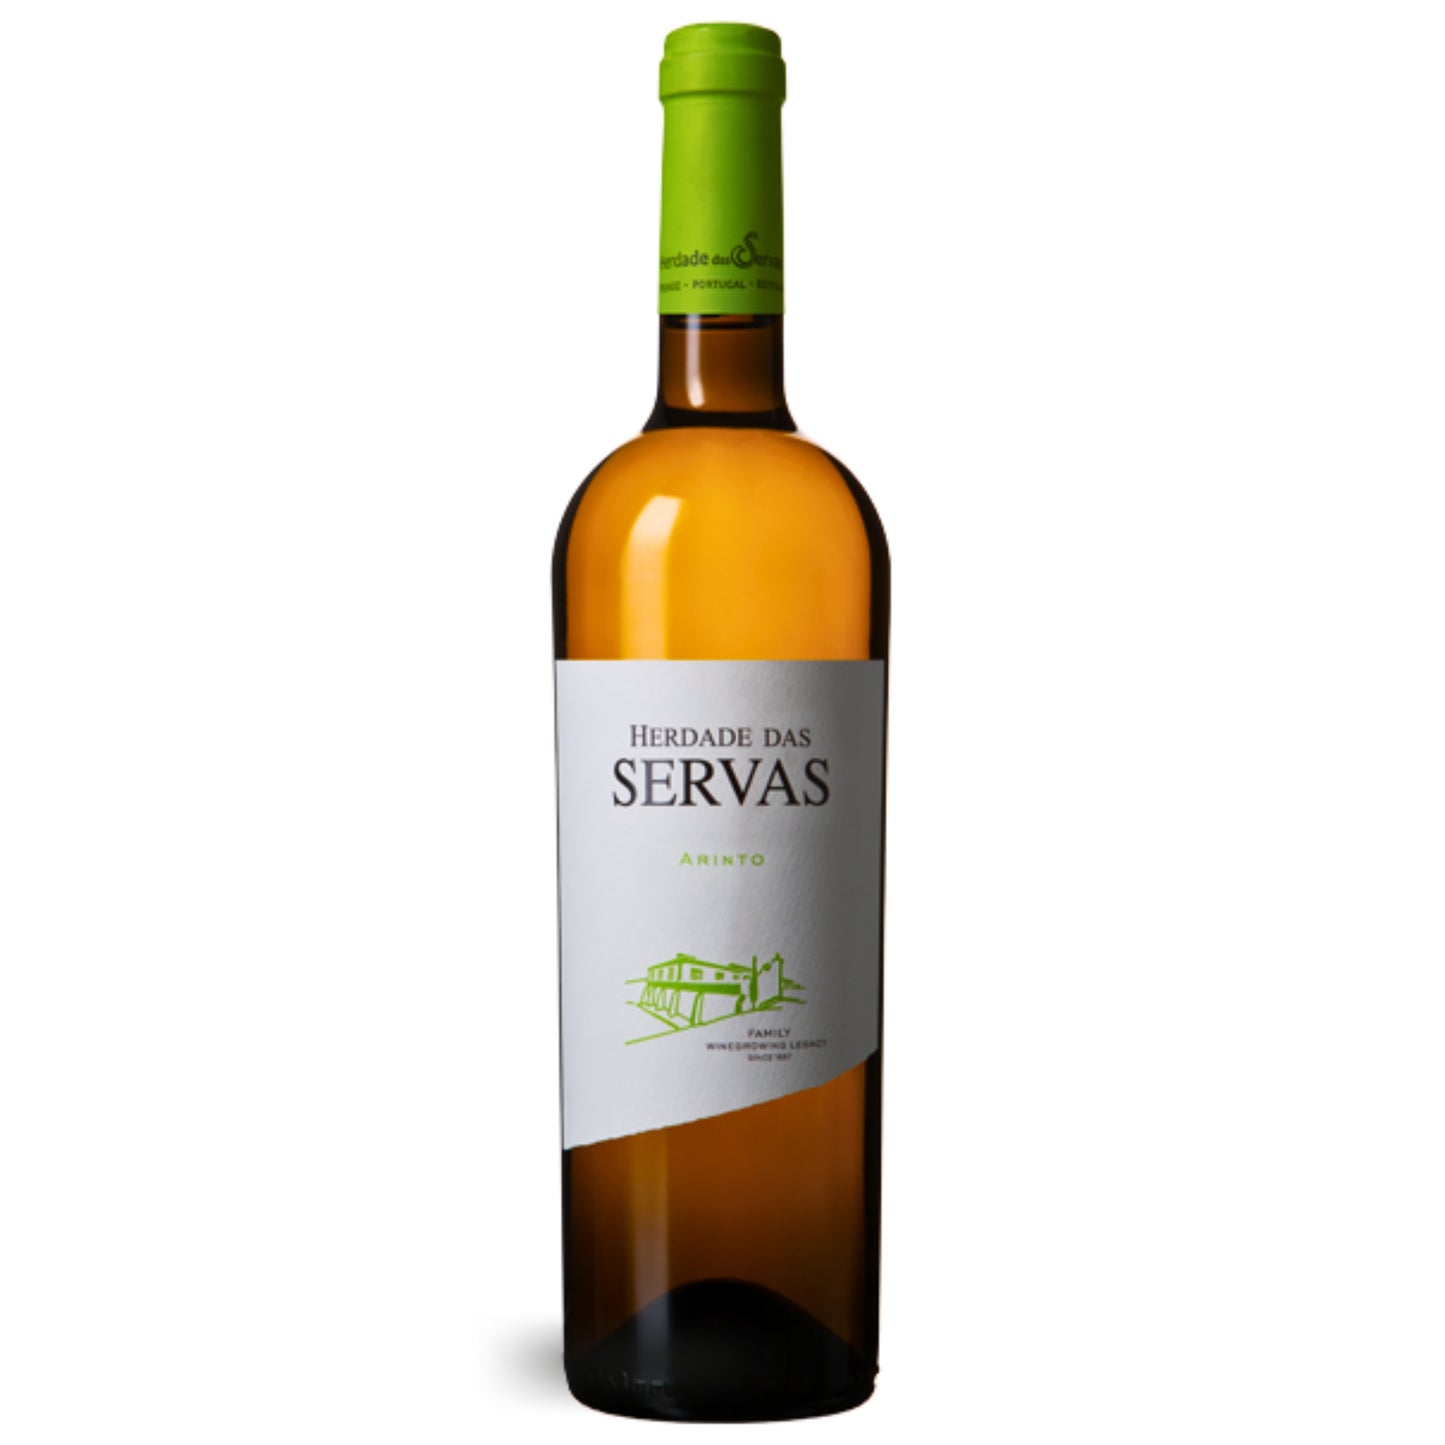 HERDADE DAS SERVAS ARINTO 2021, Flasche Weißwein vom Weingut Herdade das Servas in Portugal. Erhältlich im Onlineshop der Vinho Bar in Wuppertal.